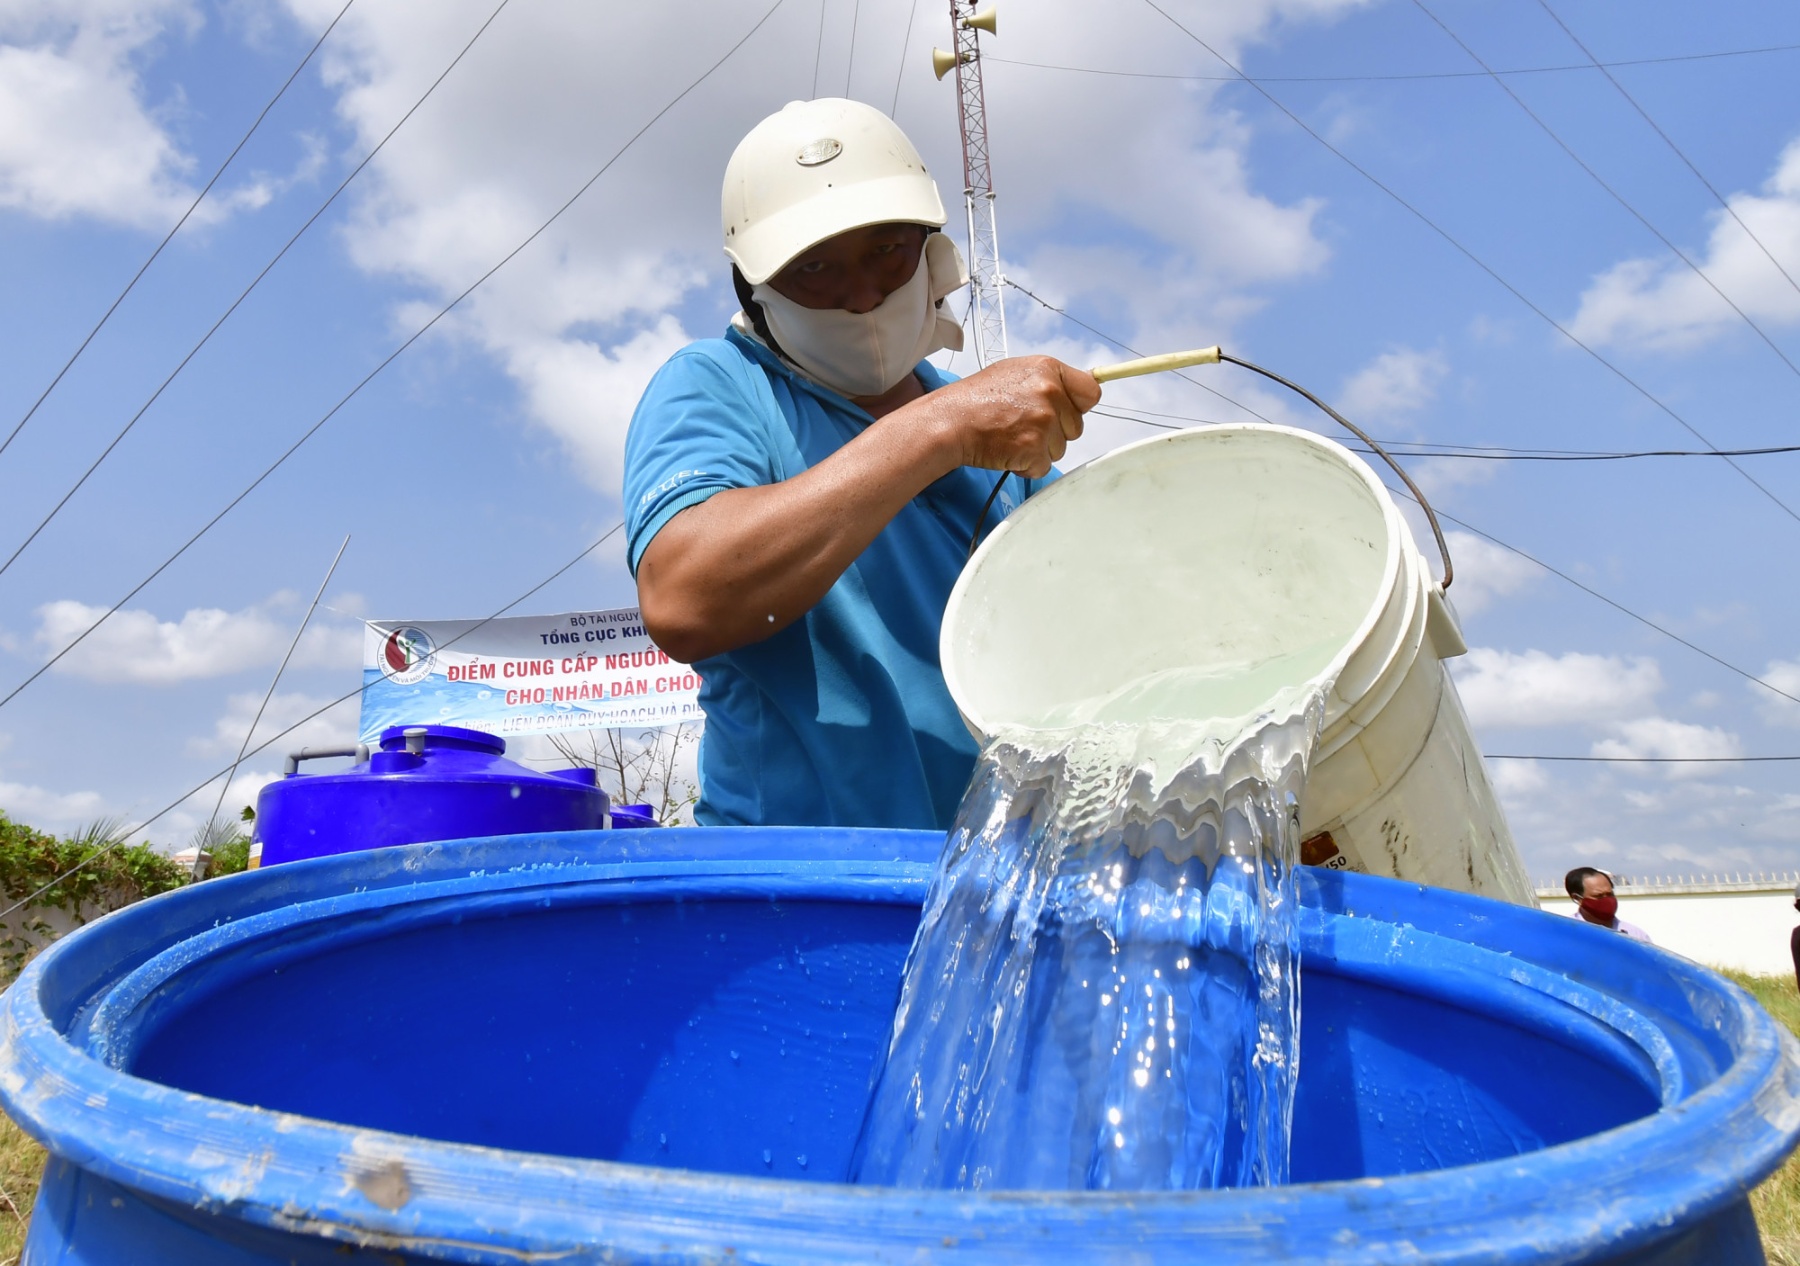 Các ngành chức năng ở Cà Mau triển khai nhiều điểm cung cấp nước ngọt cho người dân vào mùa khô. Tuy nhiên, vẫn còn rất nhiều hộ thiếu nước sinh hoạt